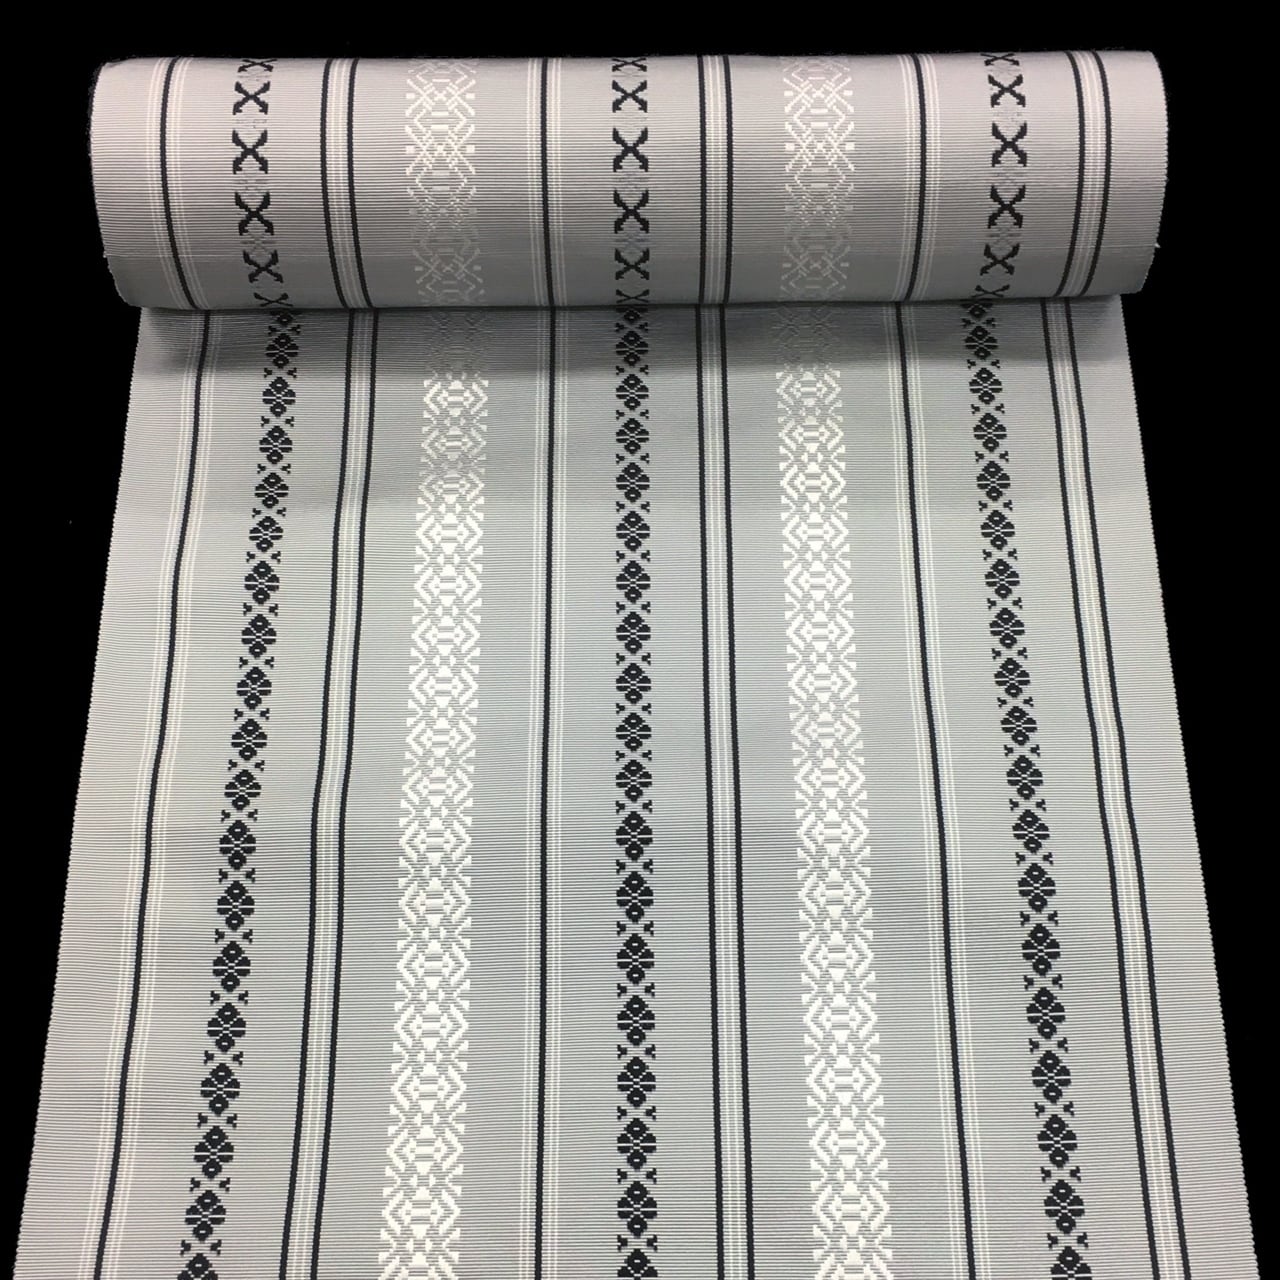 正絹。高級な唐帯。白地に刺繍が見事な、名古屋帯です。とても素敵な高級帯です。